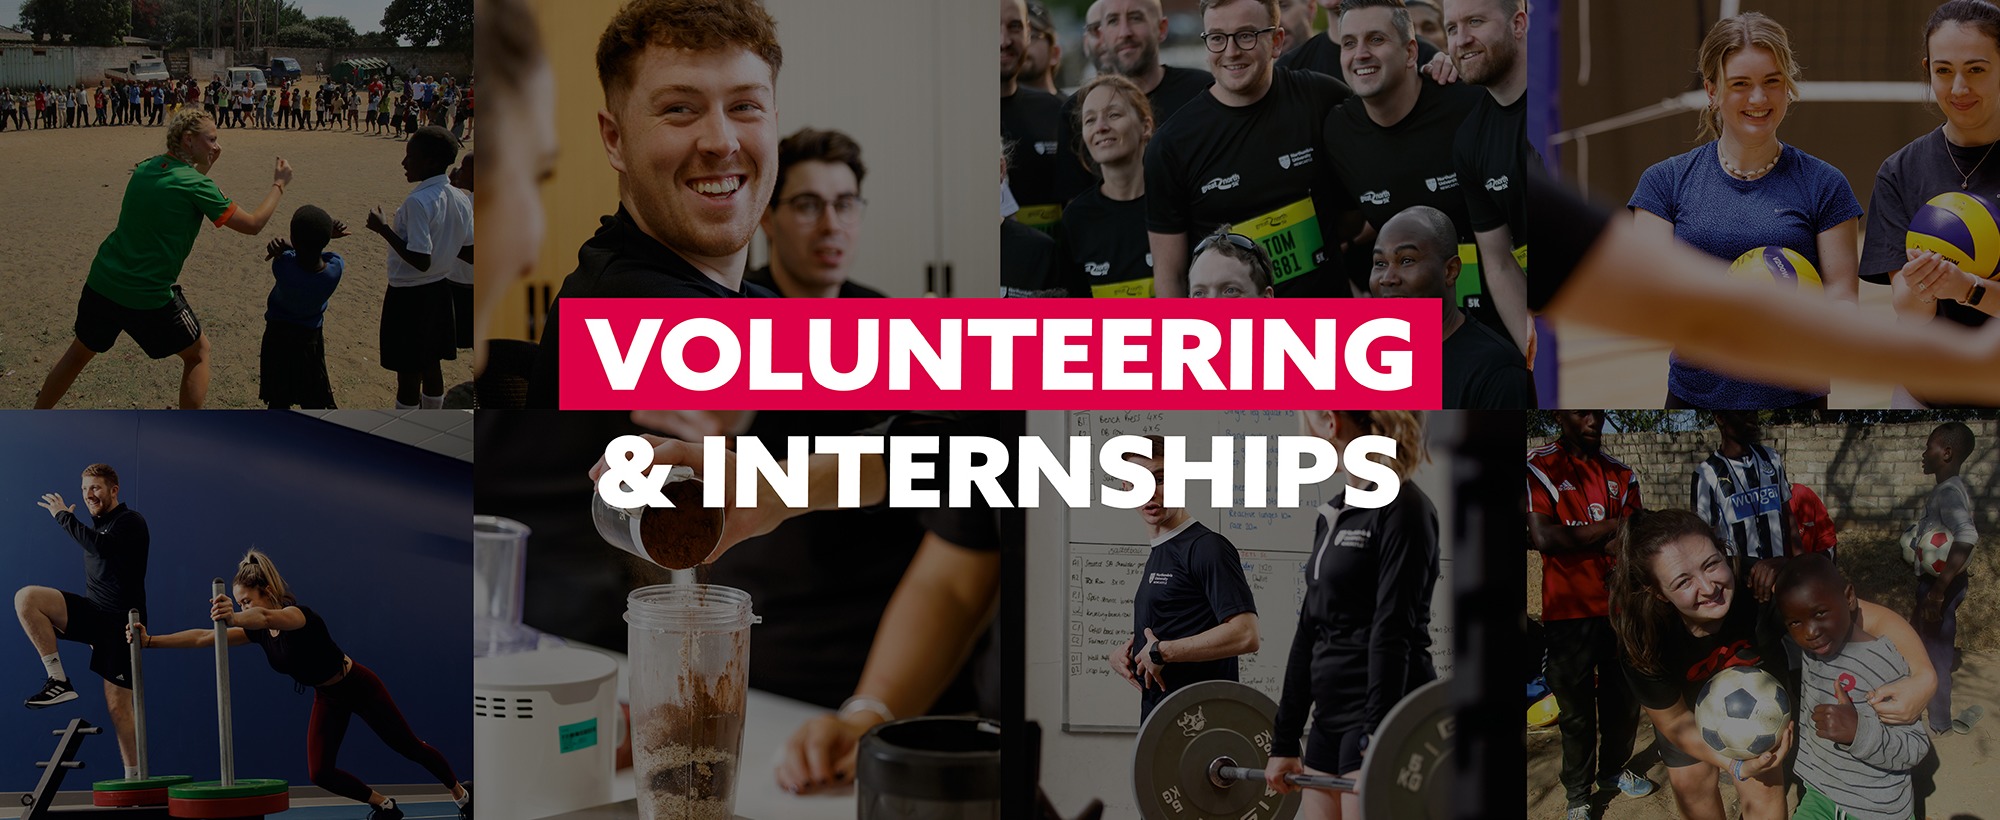 Volunteering & Internships Header.jpg